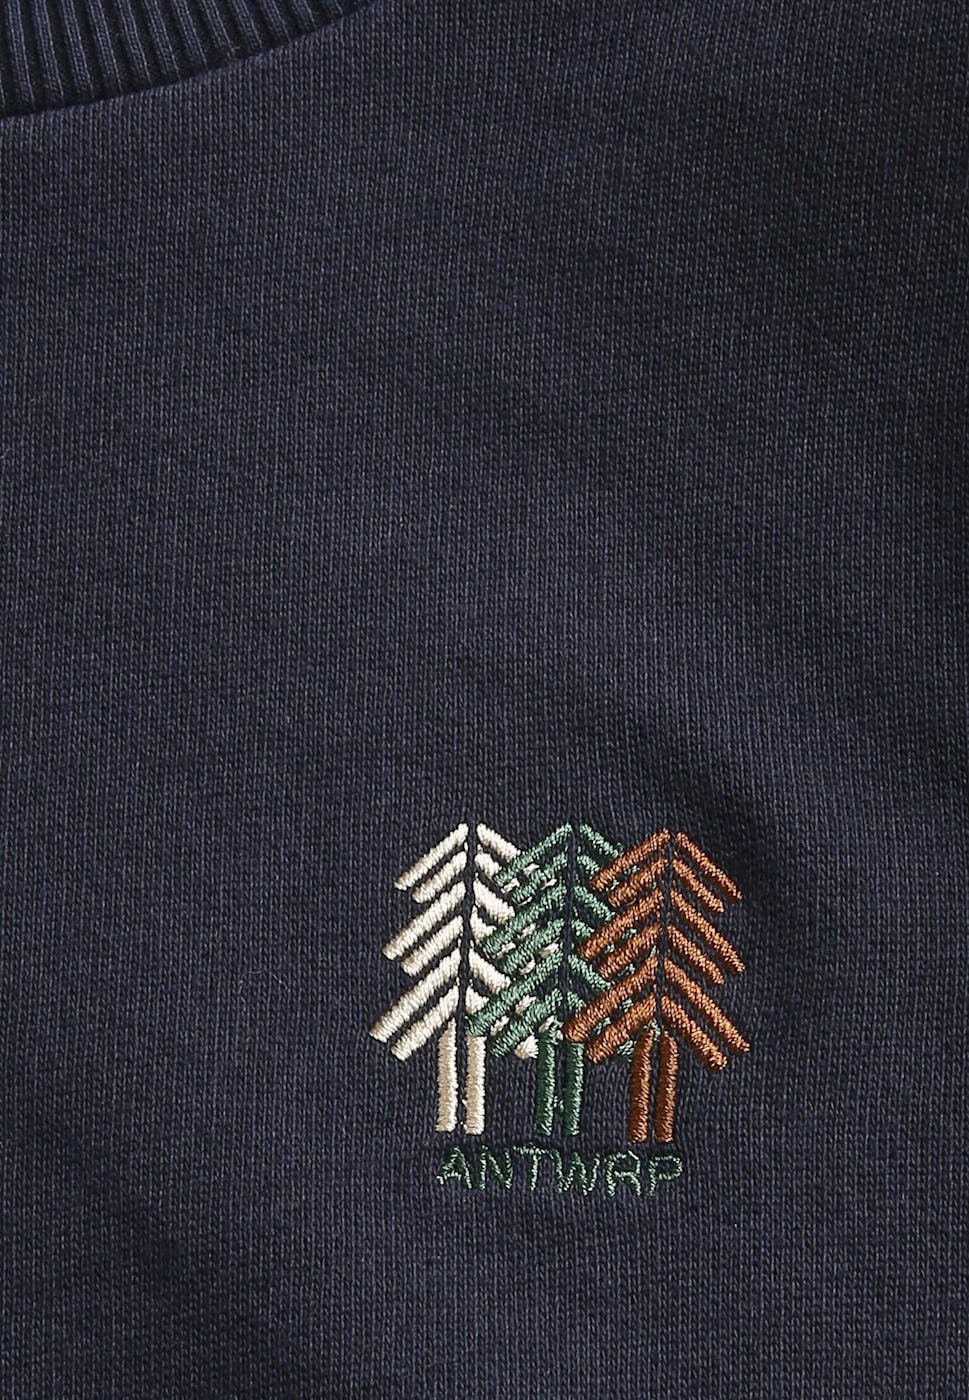 Antwrp - Donkerblauwe Nature sweater